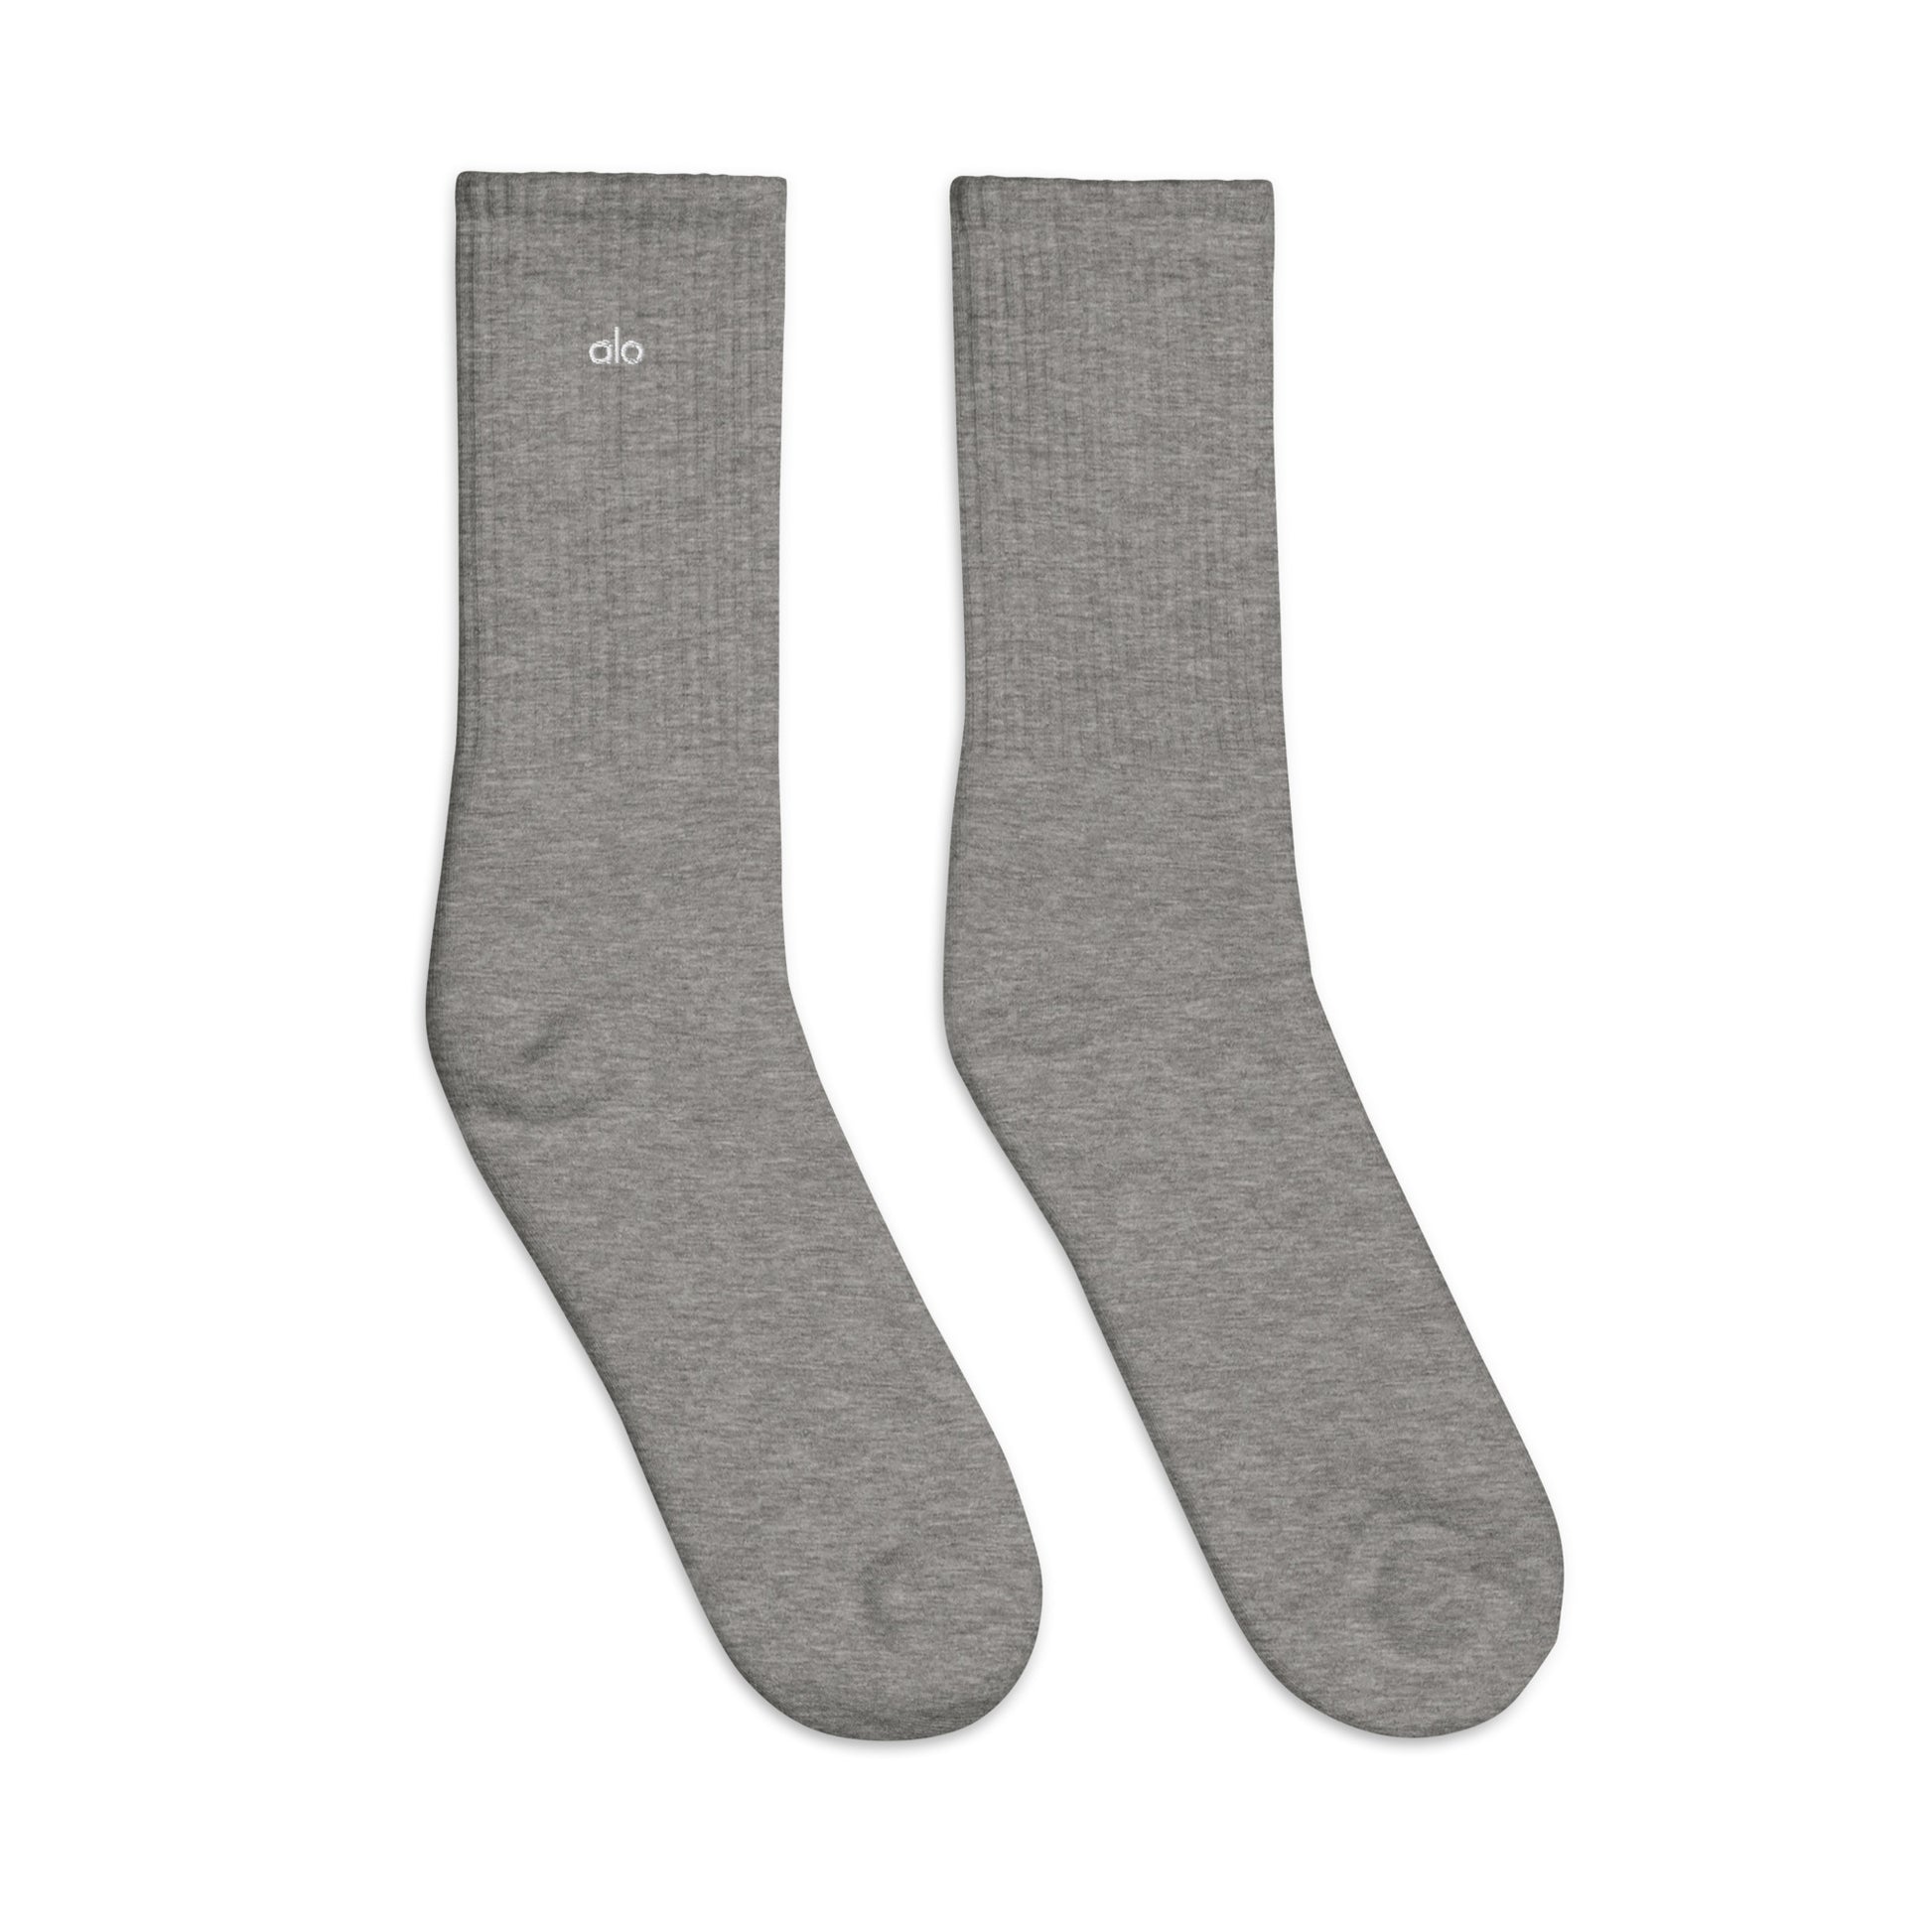 Alo Yoga Unisex Embroidered socks  LEFTIS   